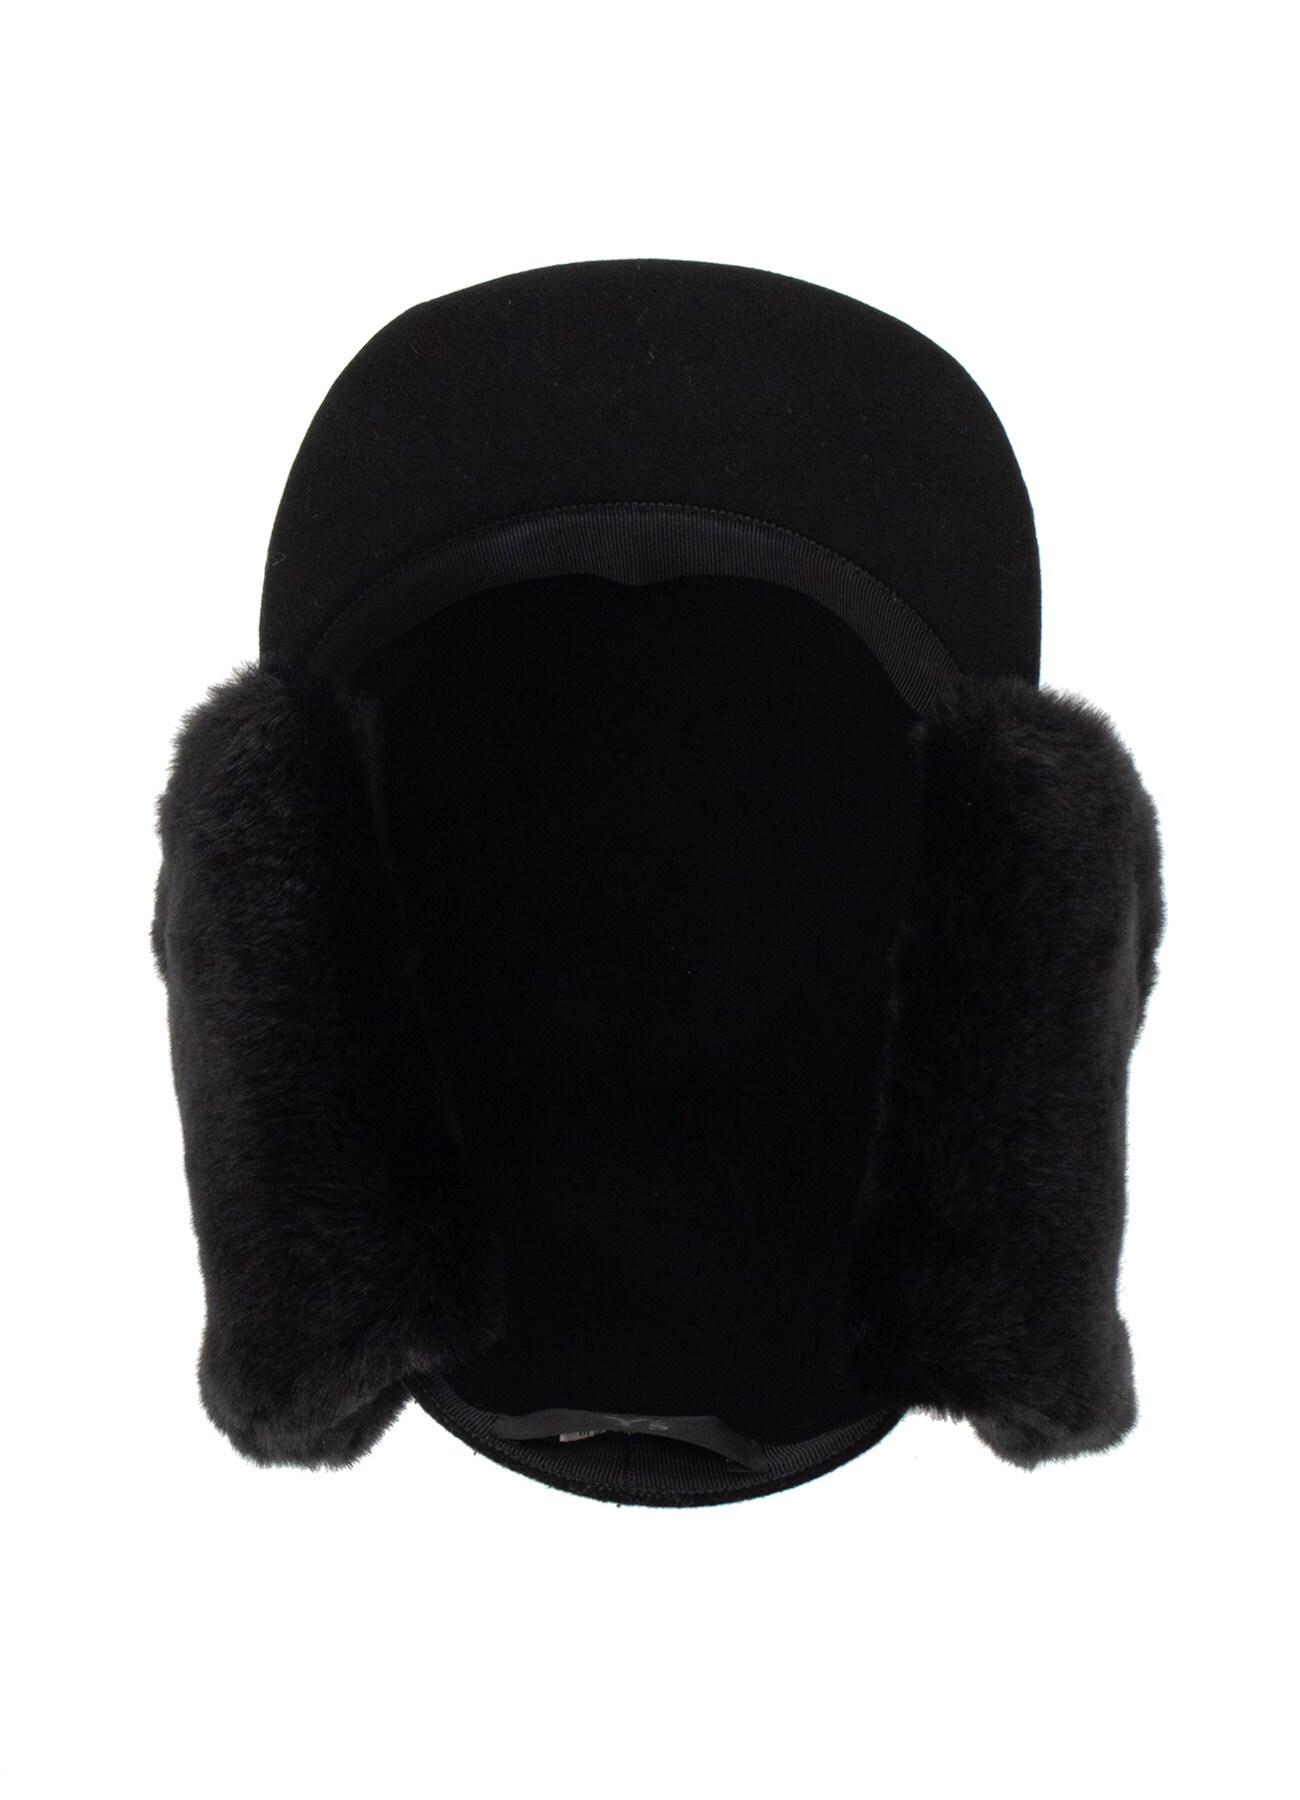 COMBI WOOL HAT BODY CAP WITH EAR WARMER